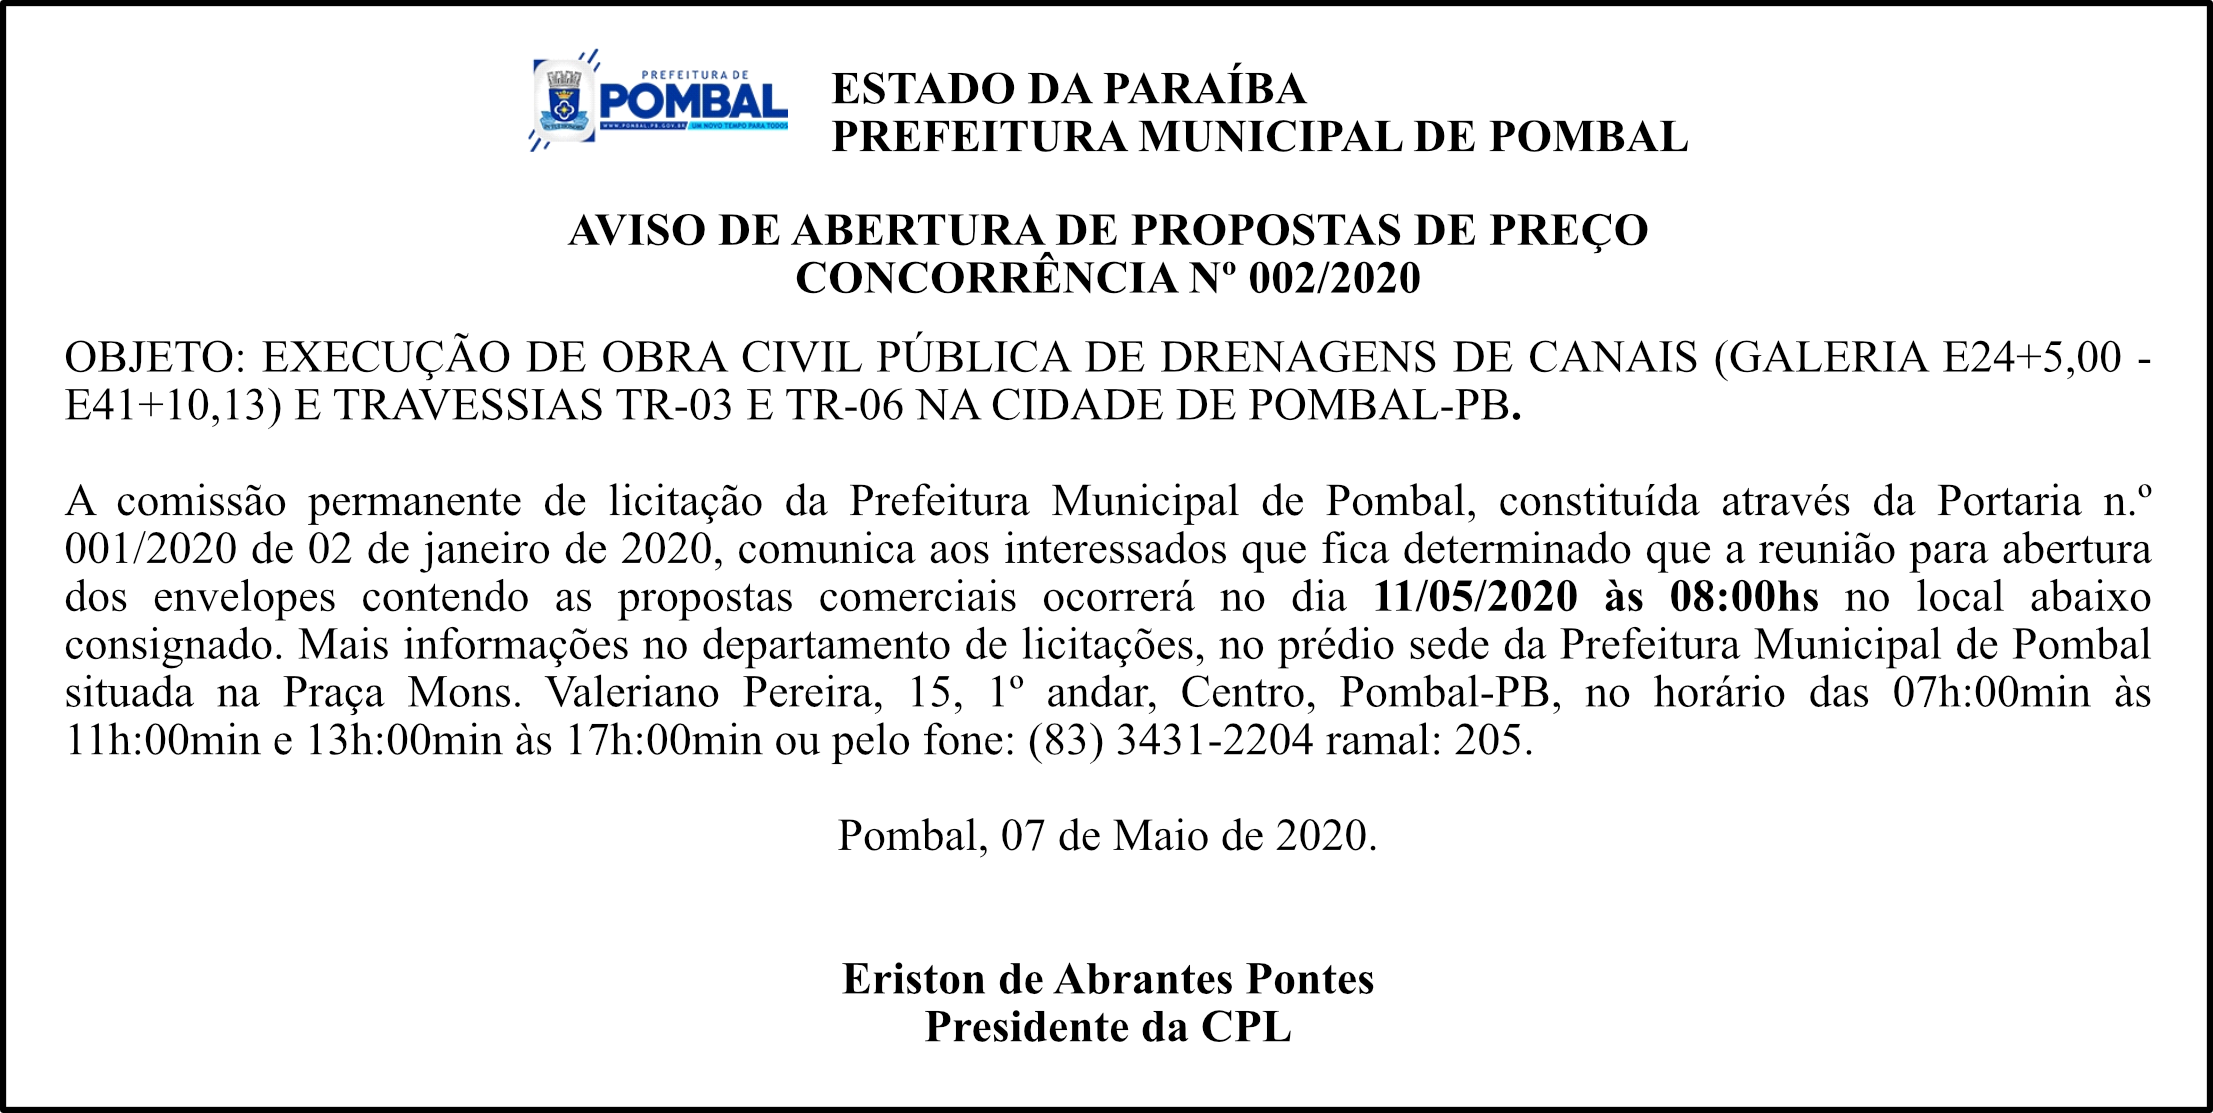 PREFEITURA MUNICIPAL DE POMBAL – AVISO DE ABERTURA DE PROPOSTAS DE PREÇO – CONCORRÊNCIA Nº 002/2020